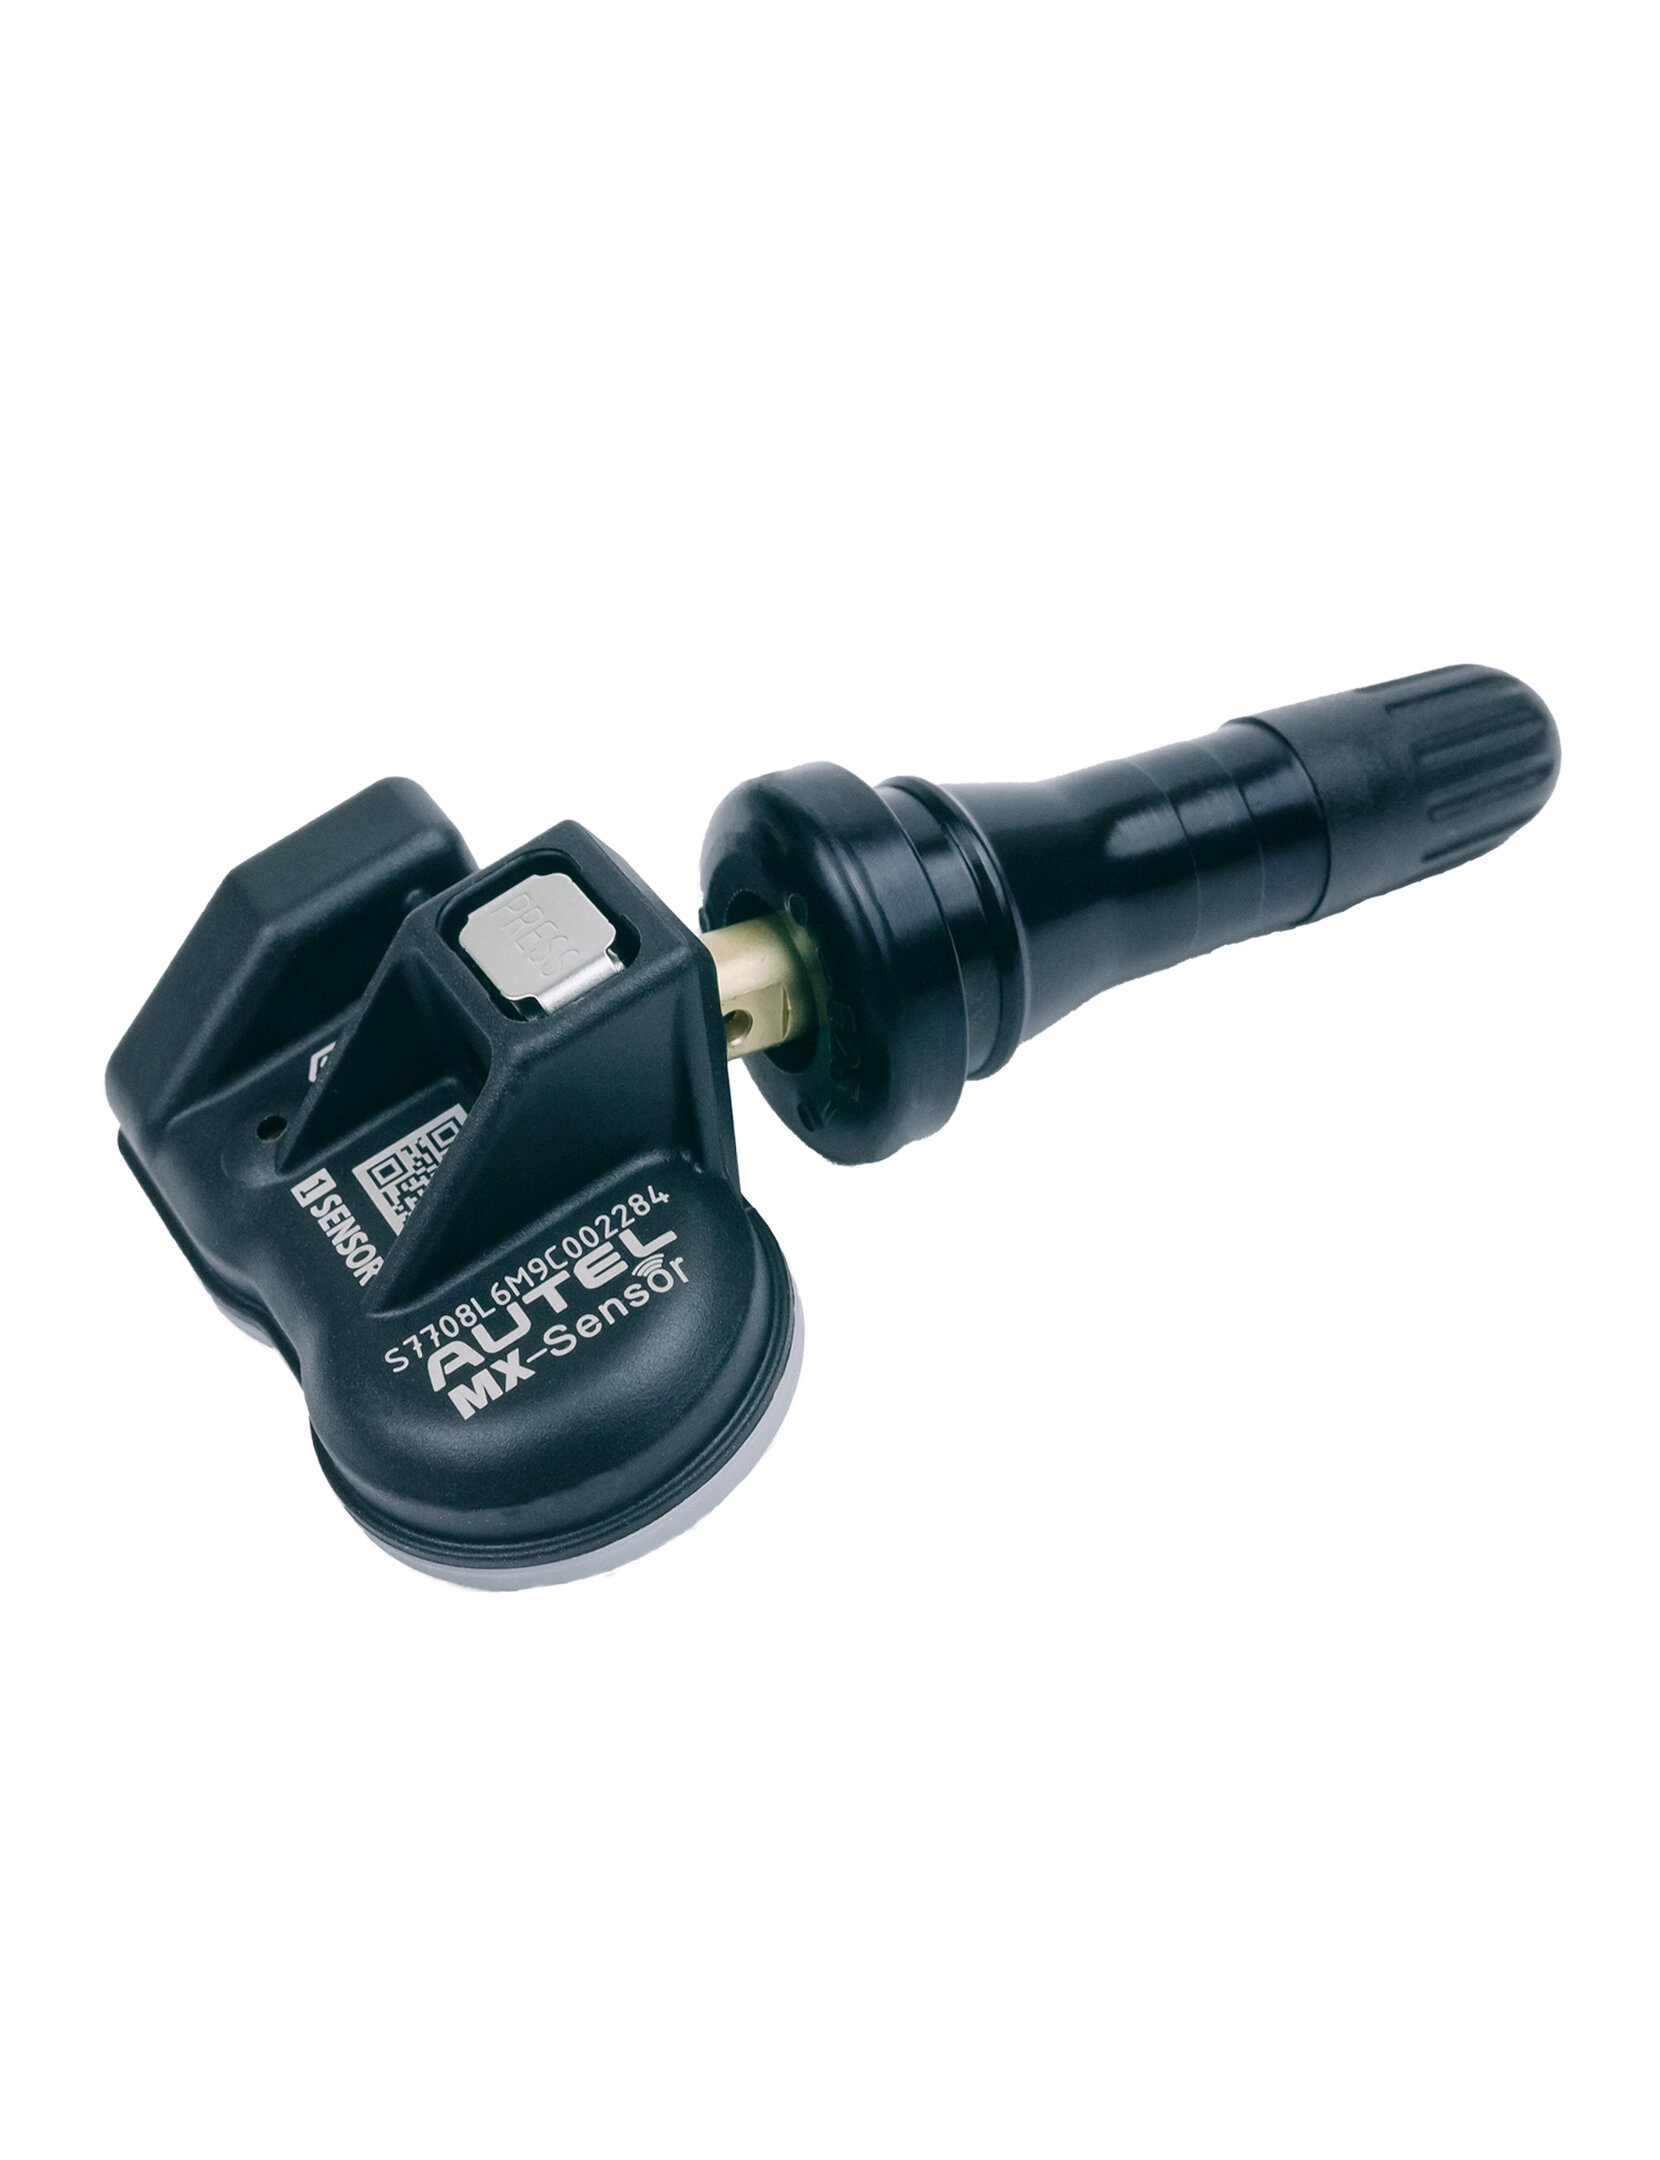 Датчик давления в шине шинах AUTEL BB5T-1A180-AA (BB5T1A180AA) для автомобиля Ford Форд Mazda Мазда (Резиновый вентиль)